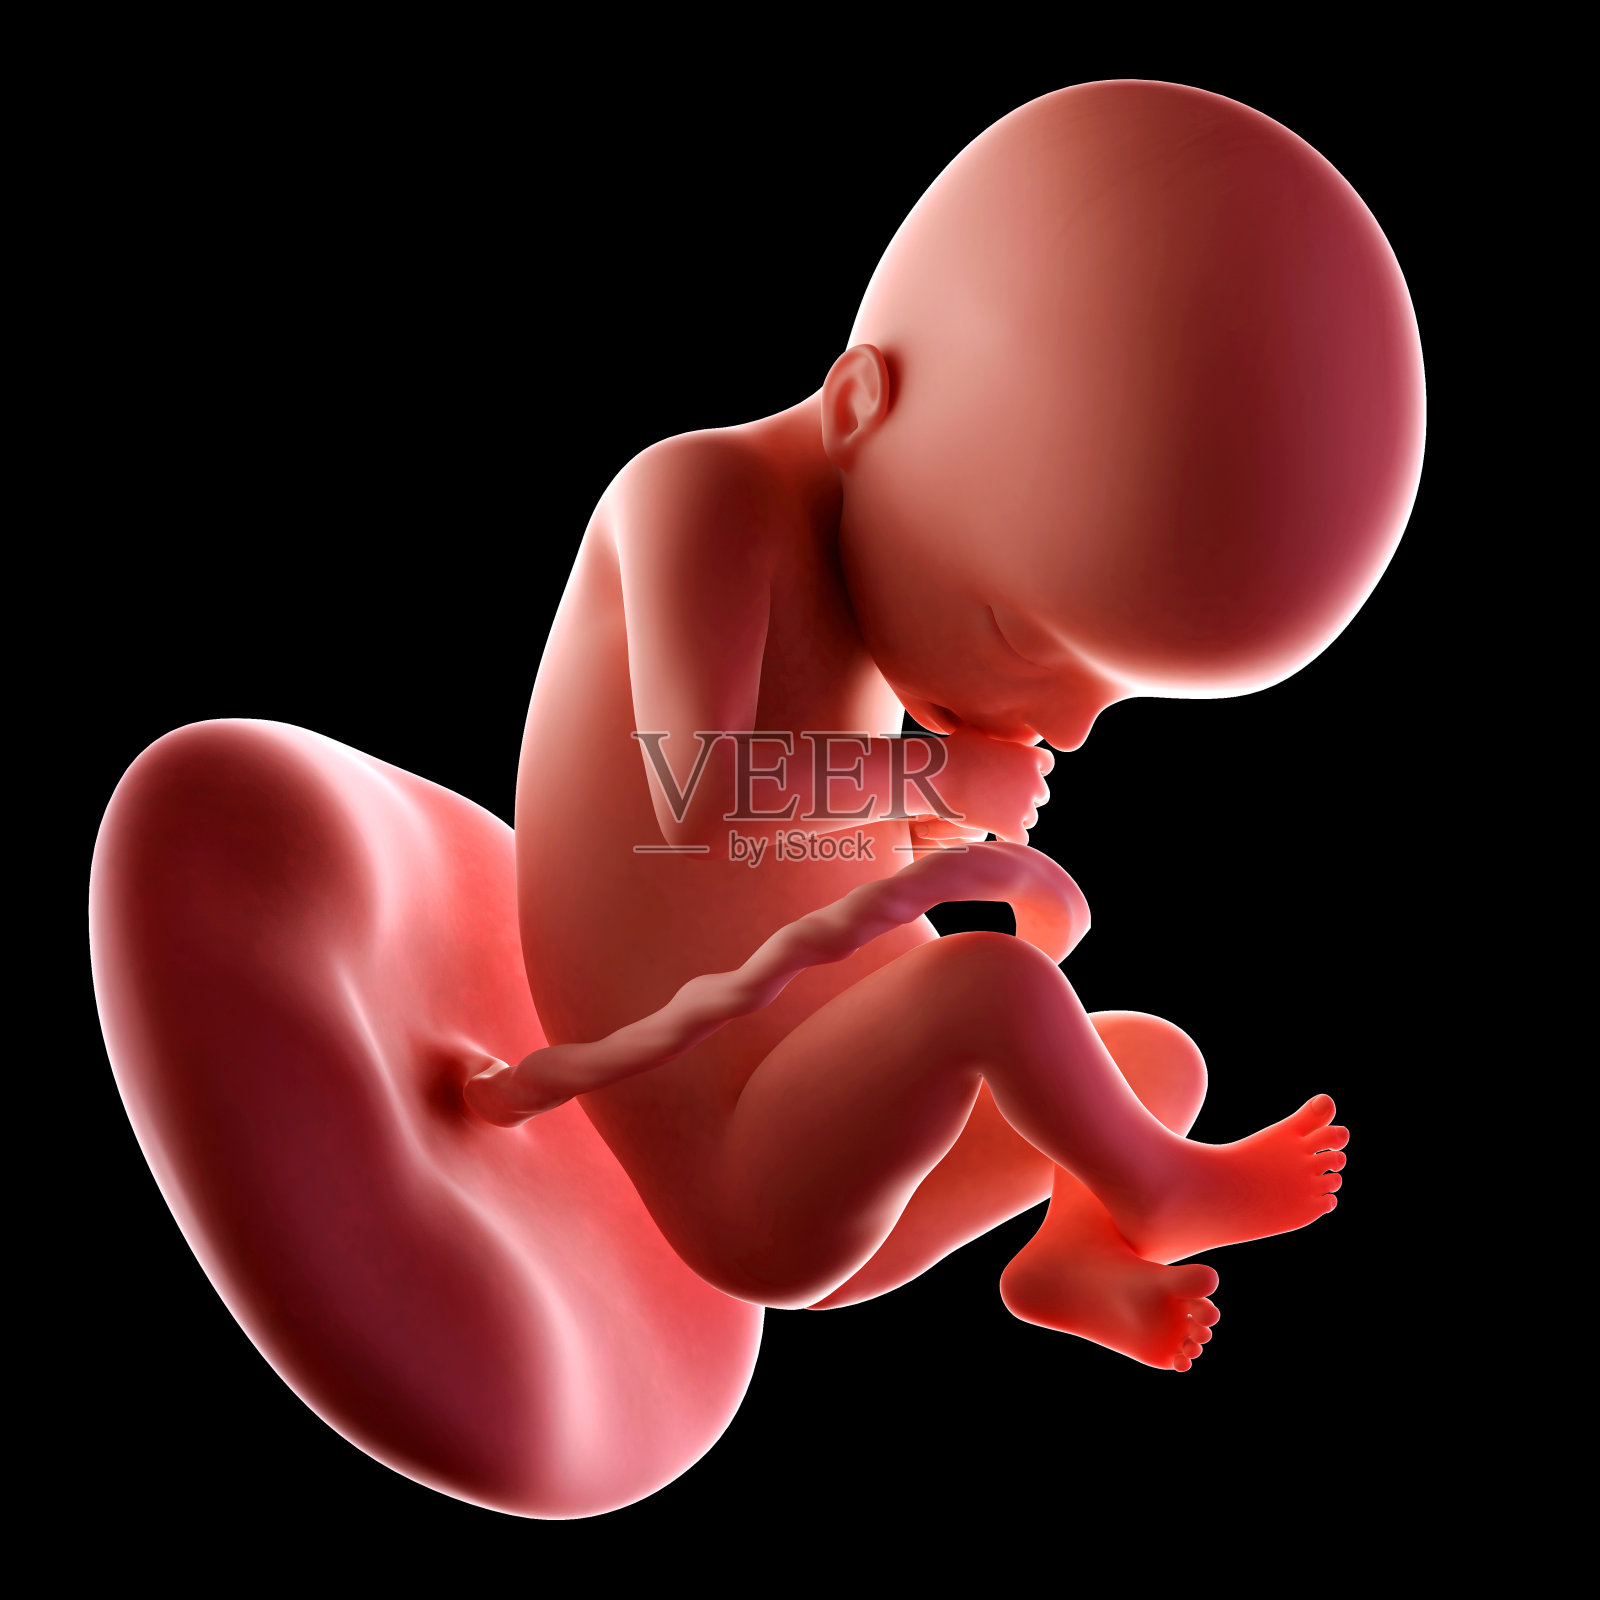 胎儿22周照片摄影图片